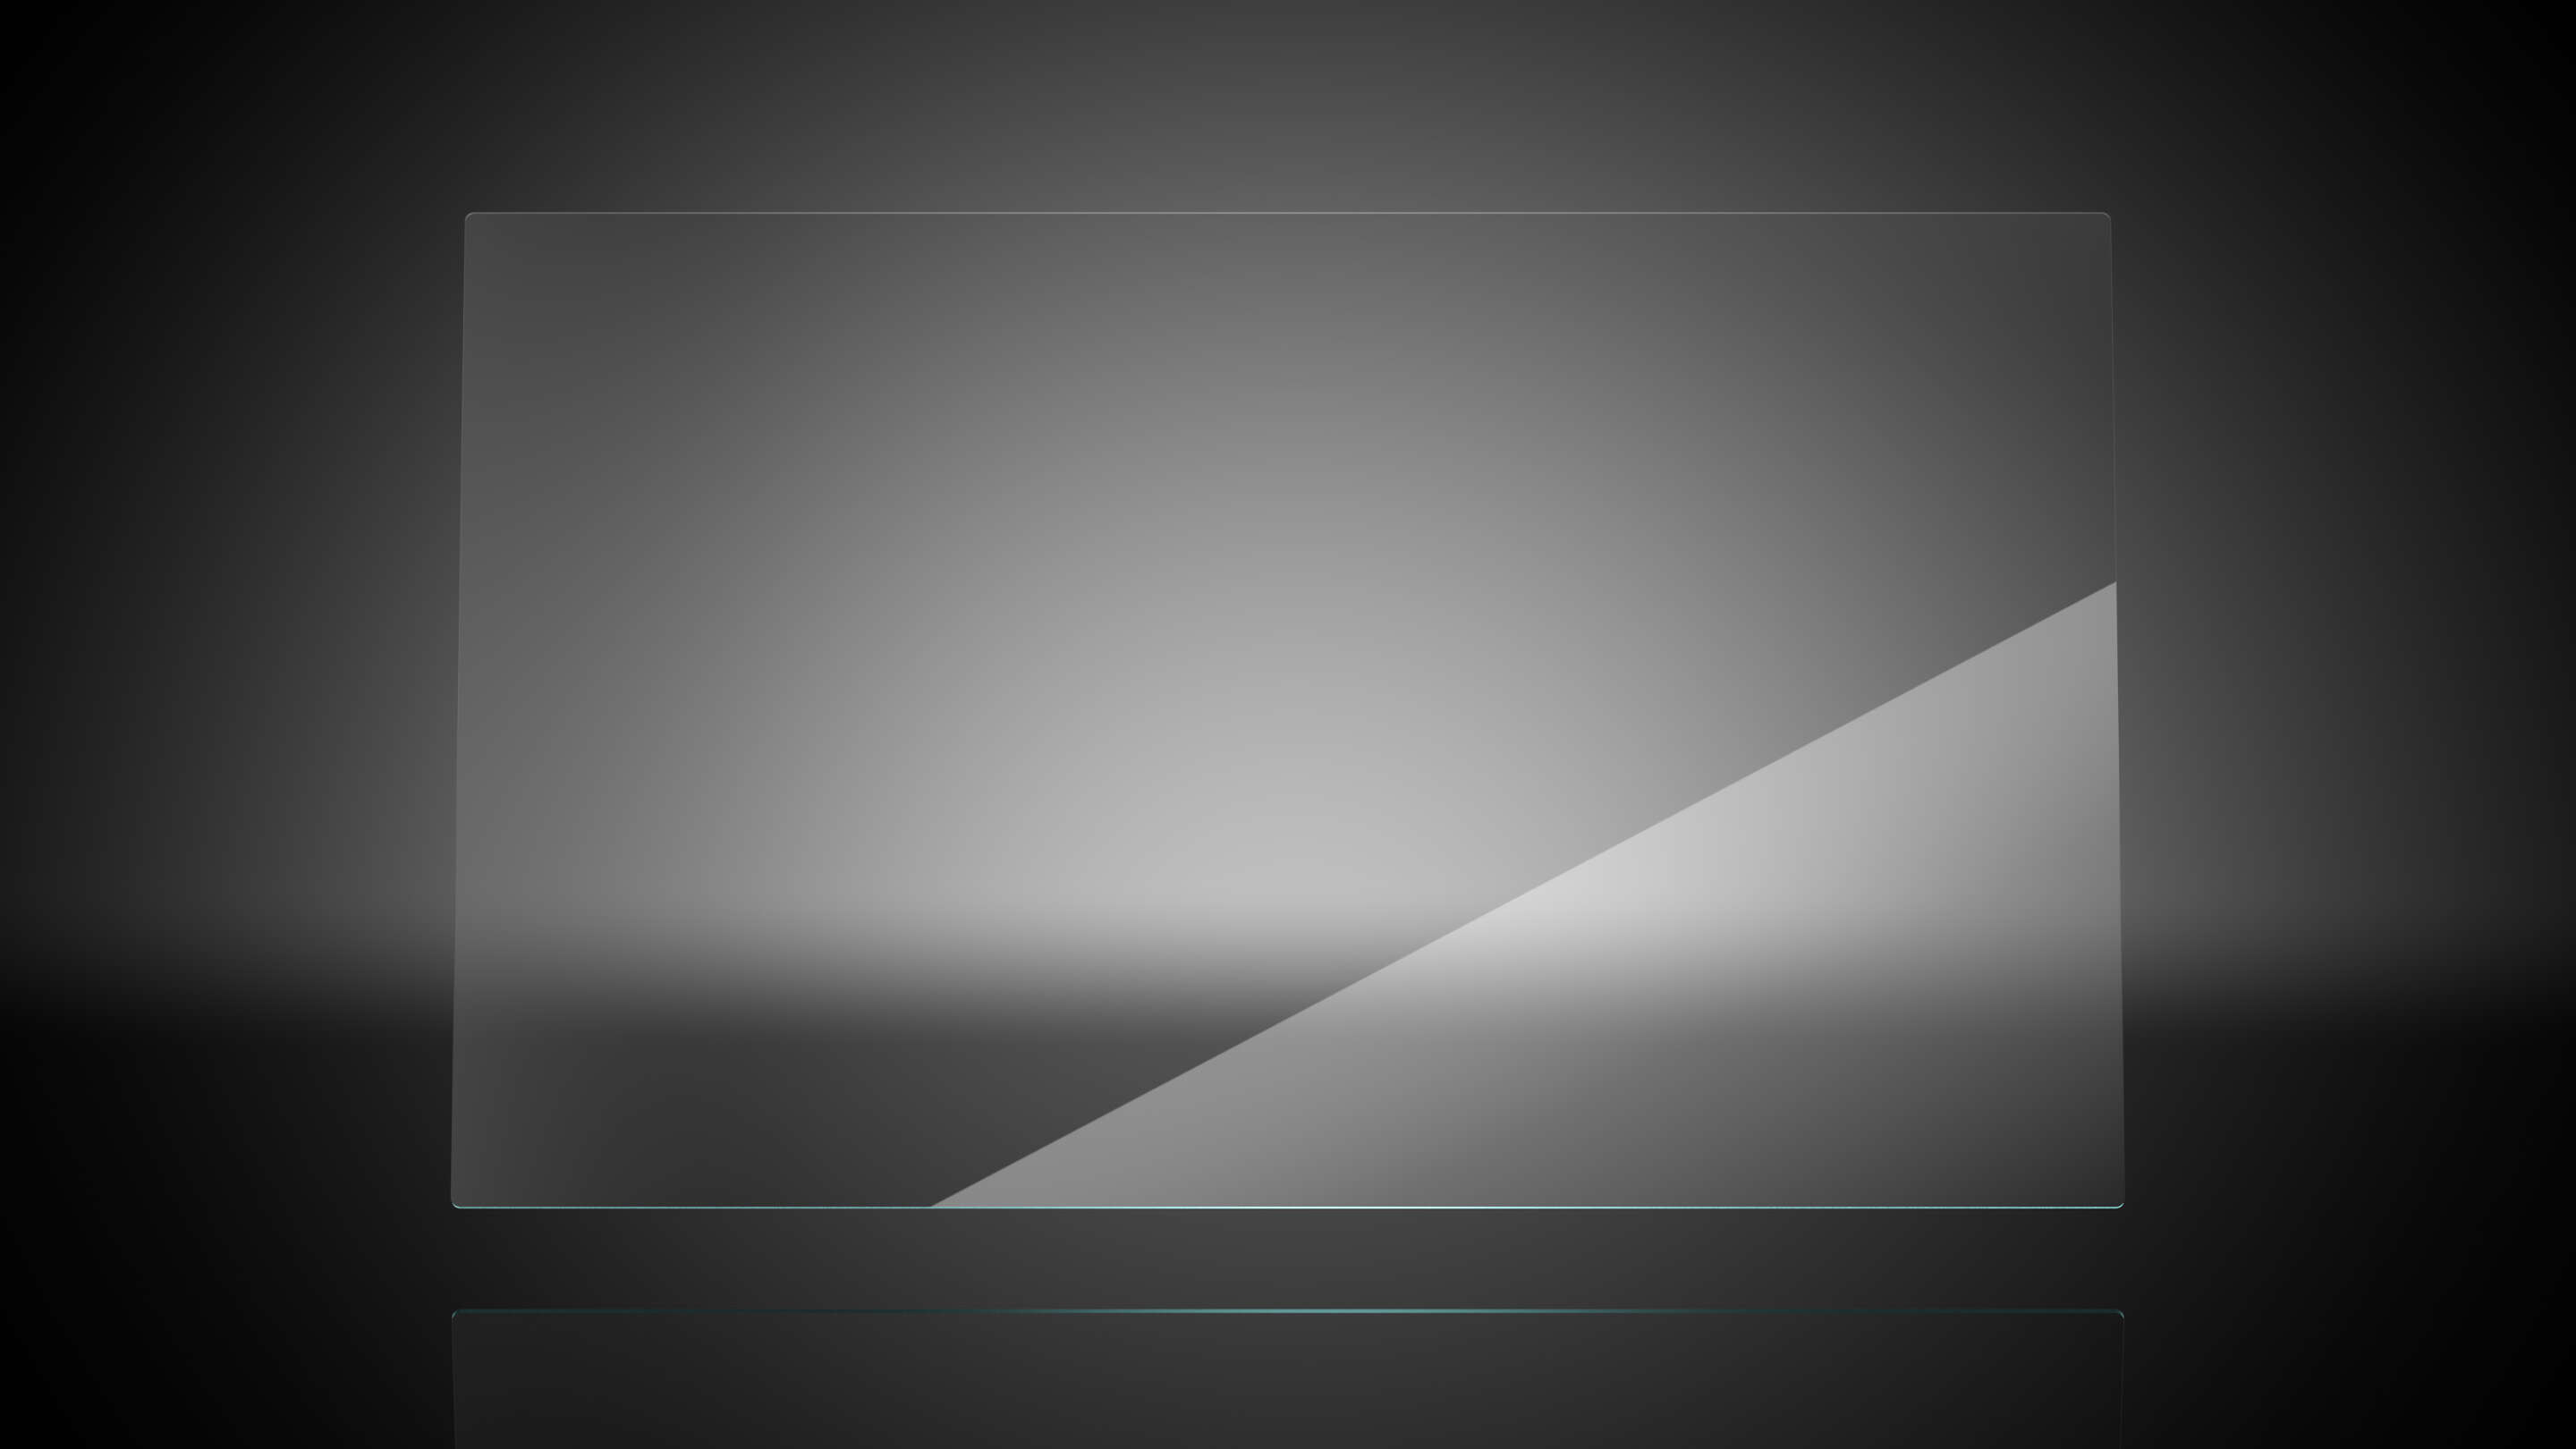 Стандарты - шкала твердости по шкале Мооса на черно-белом фоне